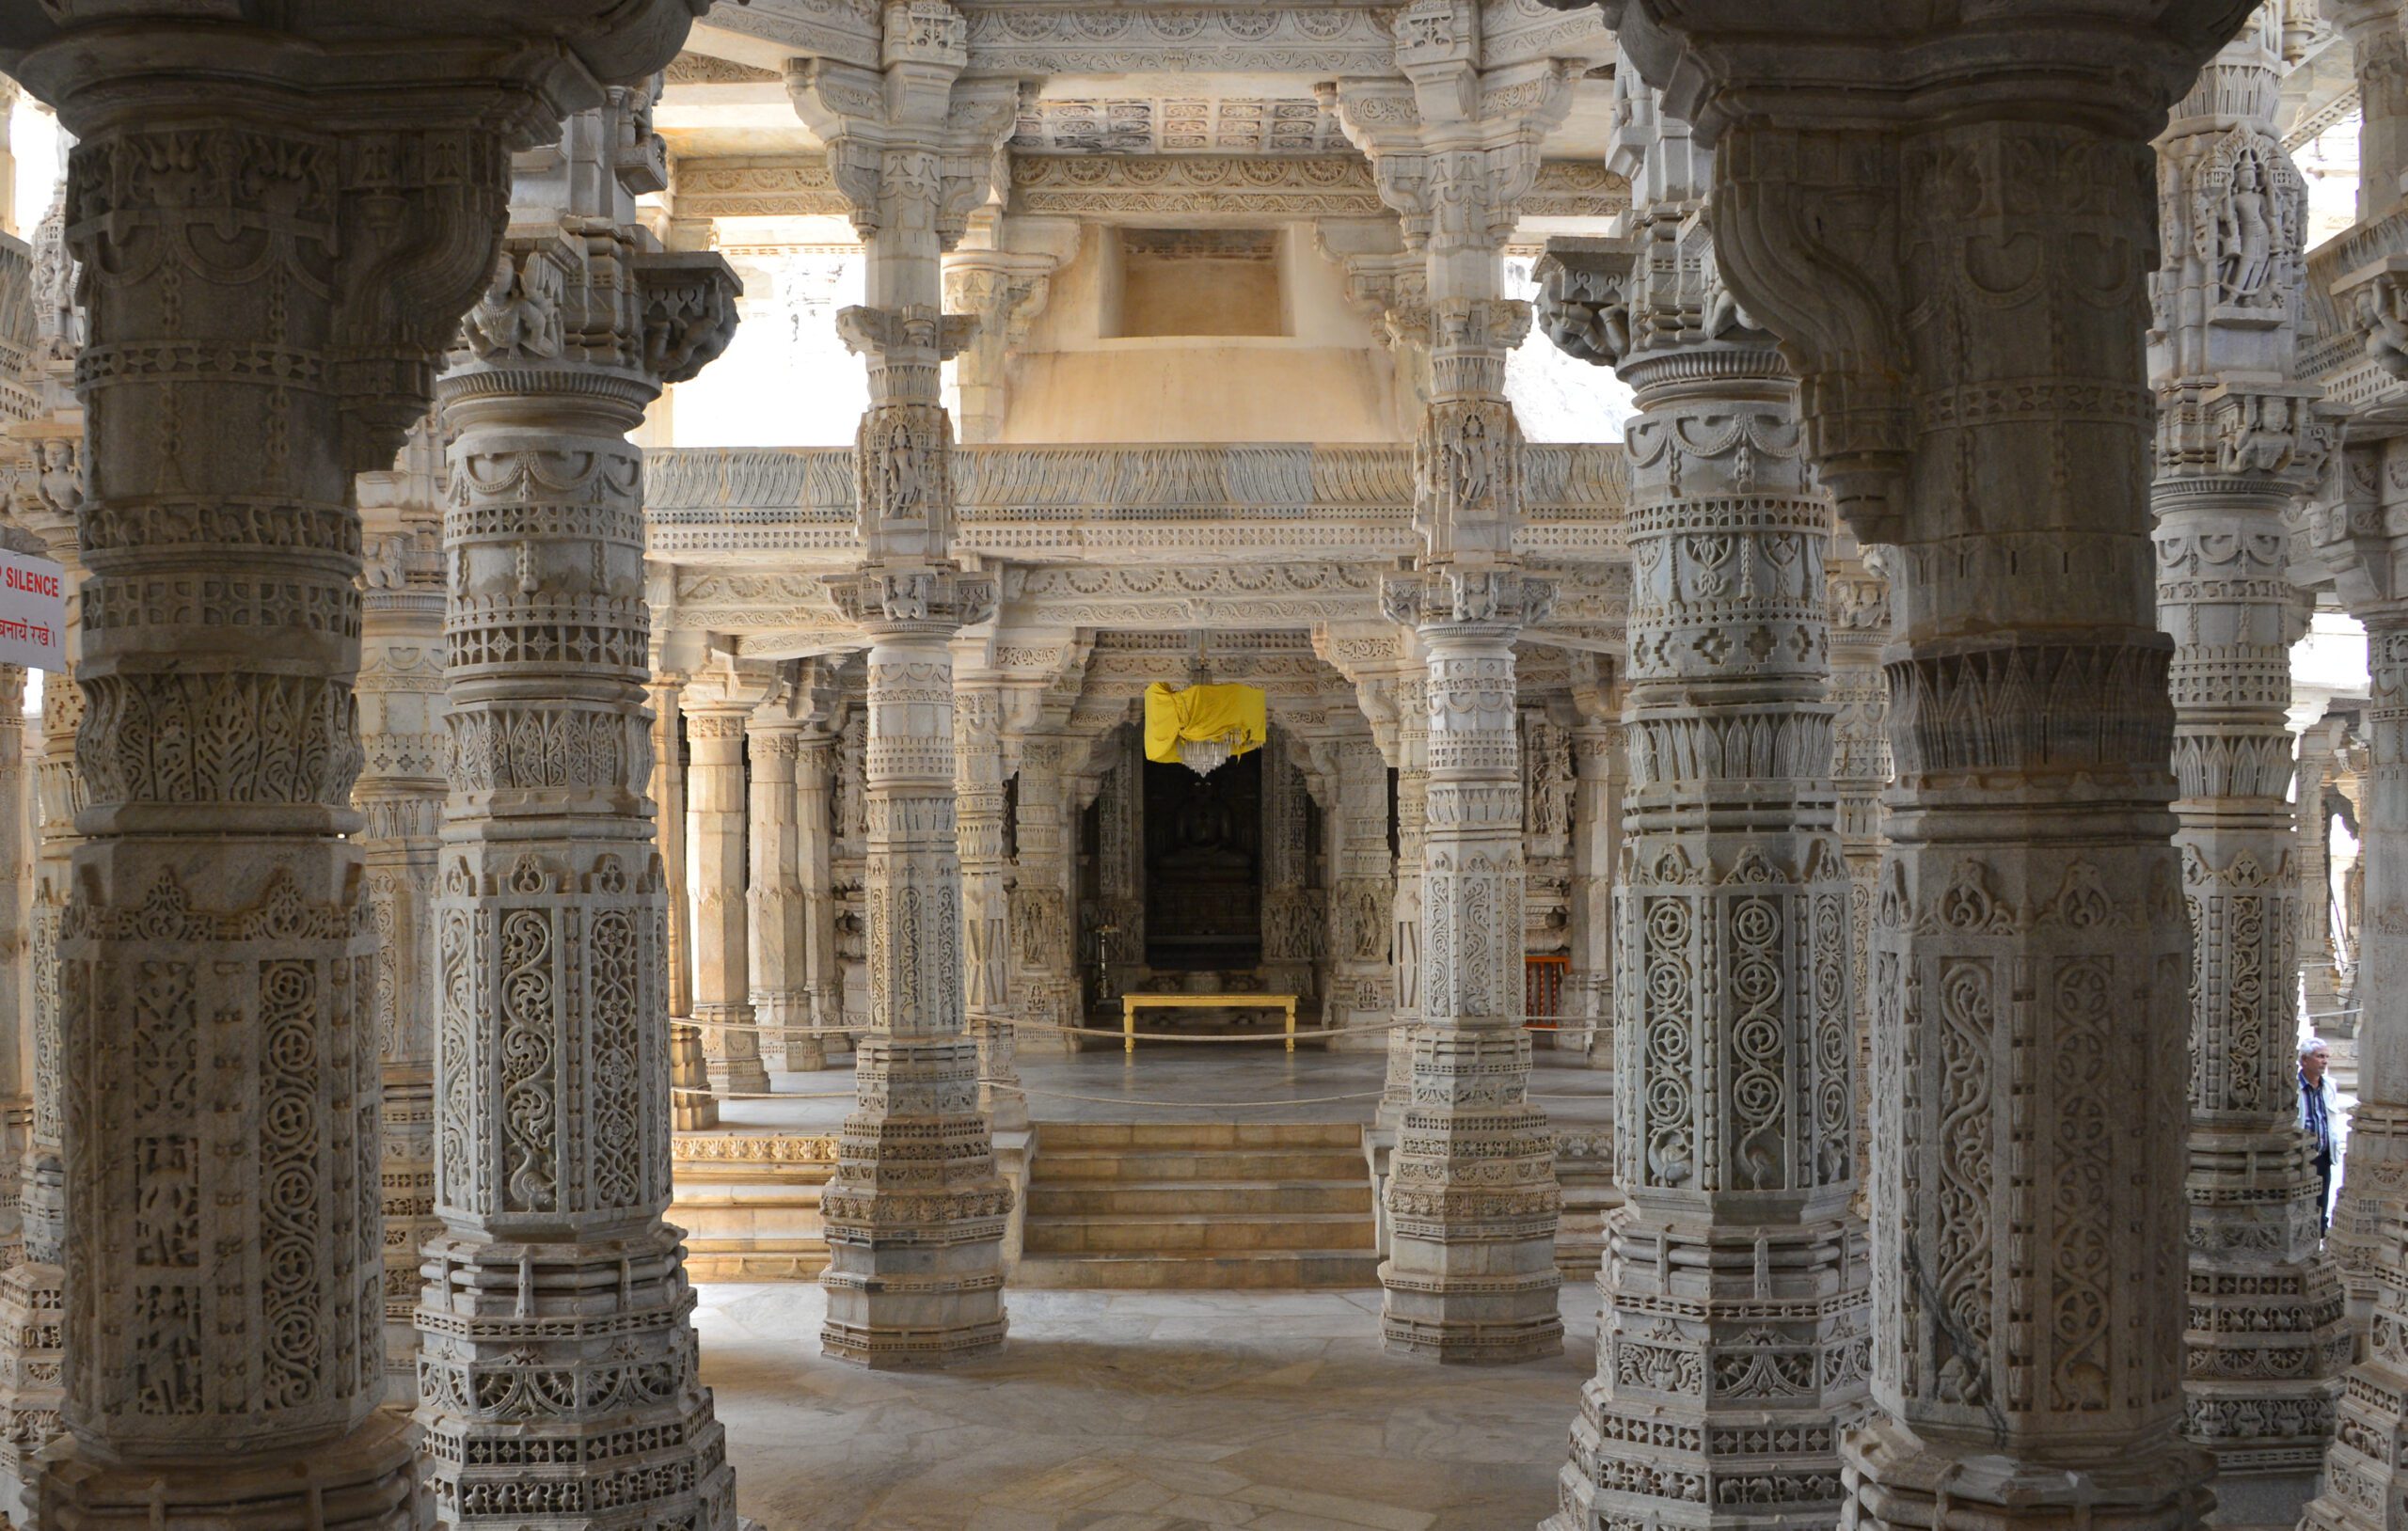 Marble Pillars at Ranakpur Jain temple